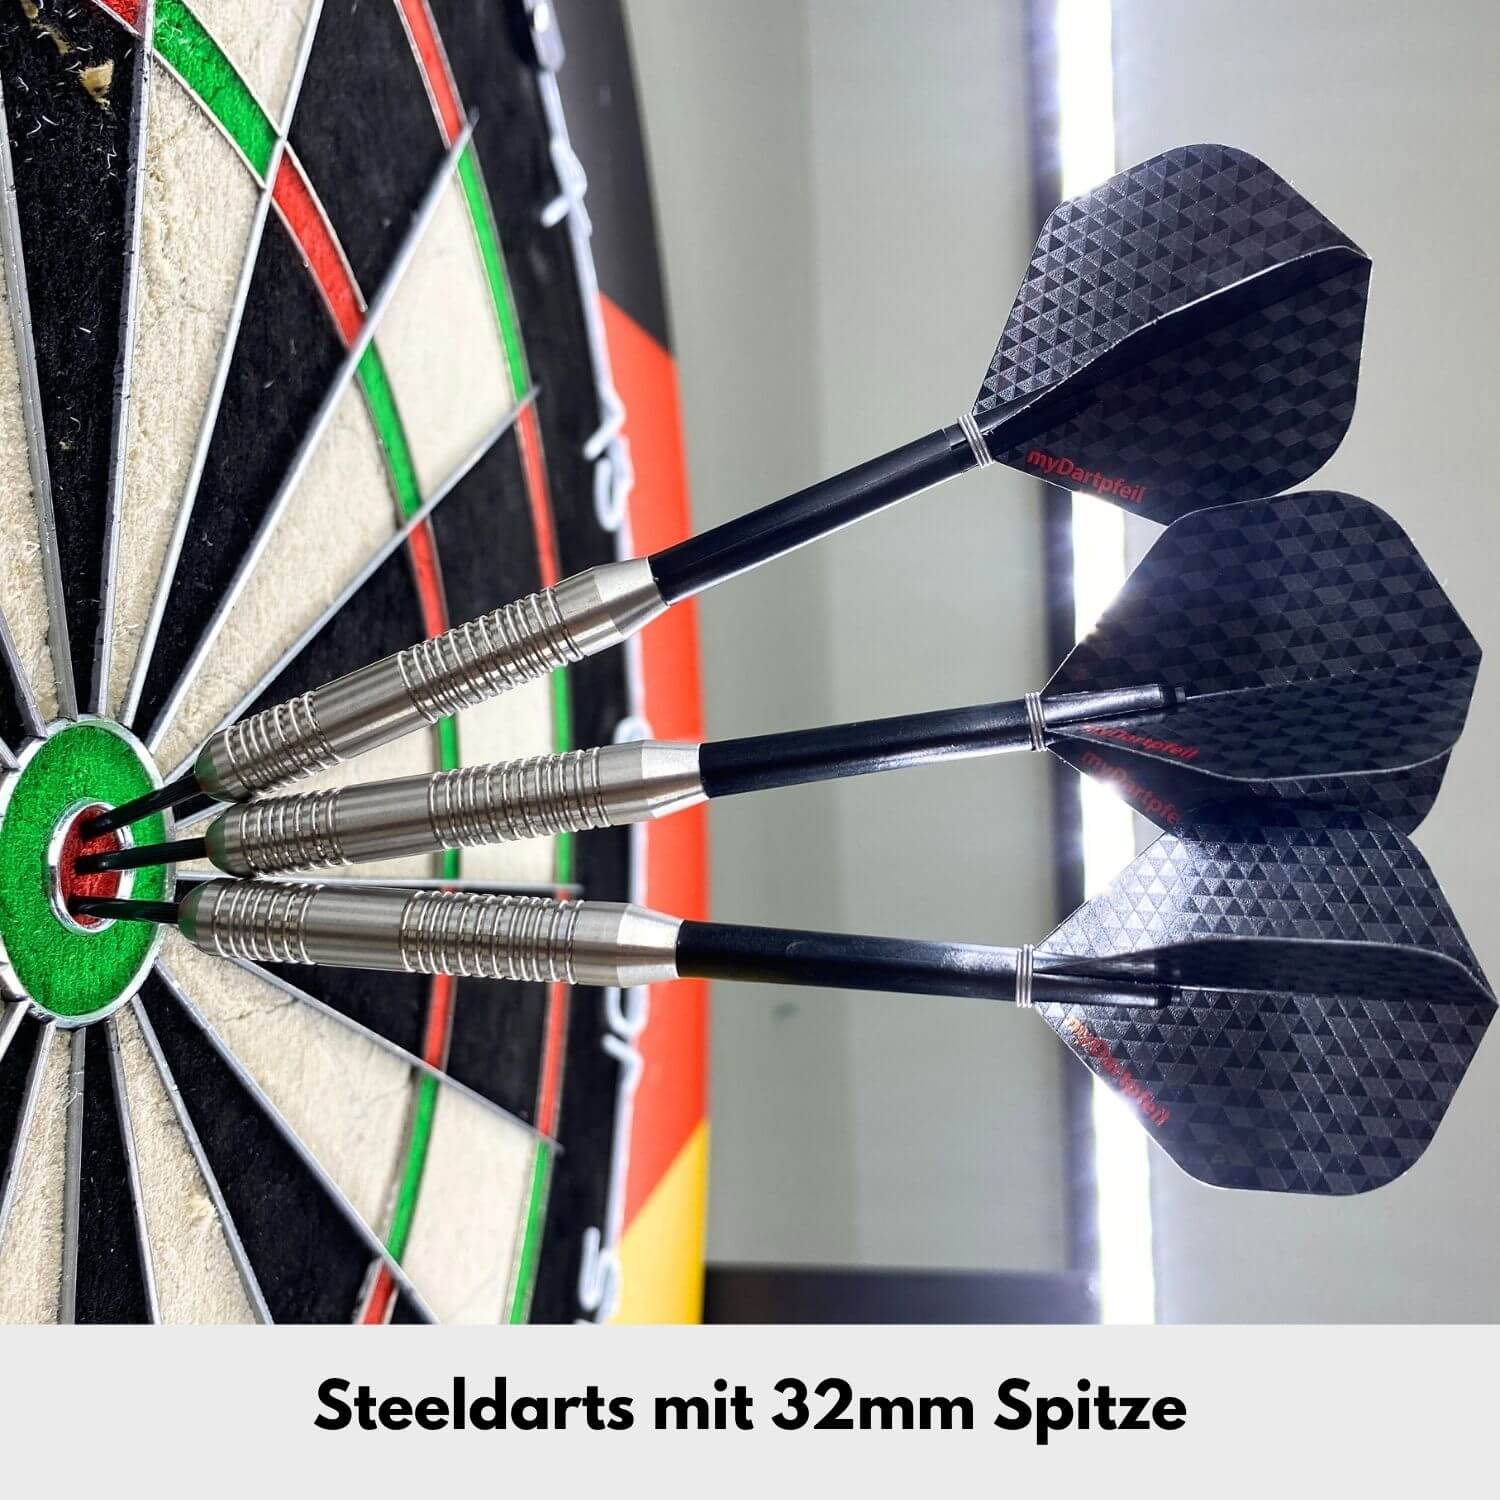 Beginner steel darts in 23g